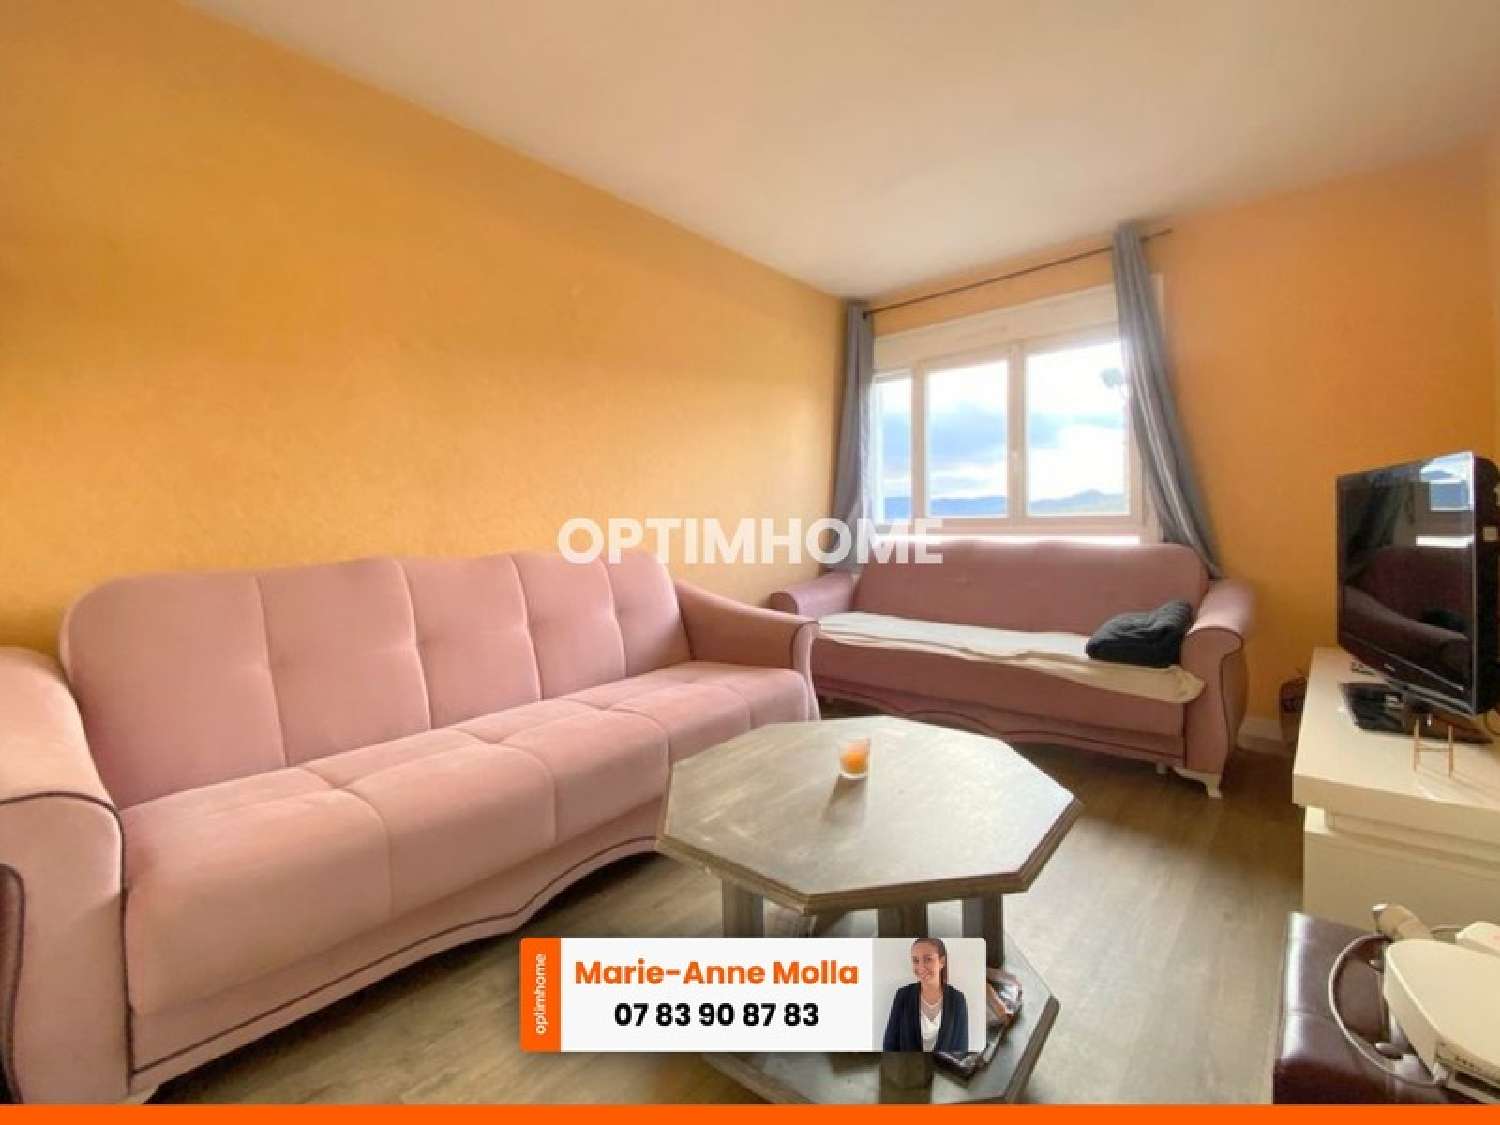  for sale apartment Clermont-Ferrand 63100 Puy-de-Dôme 1